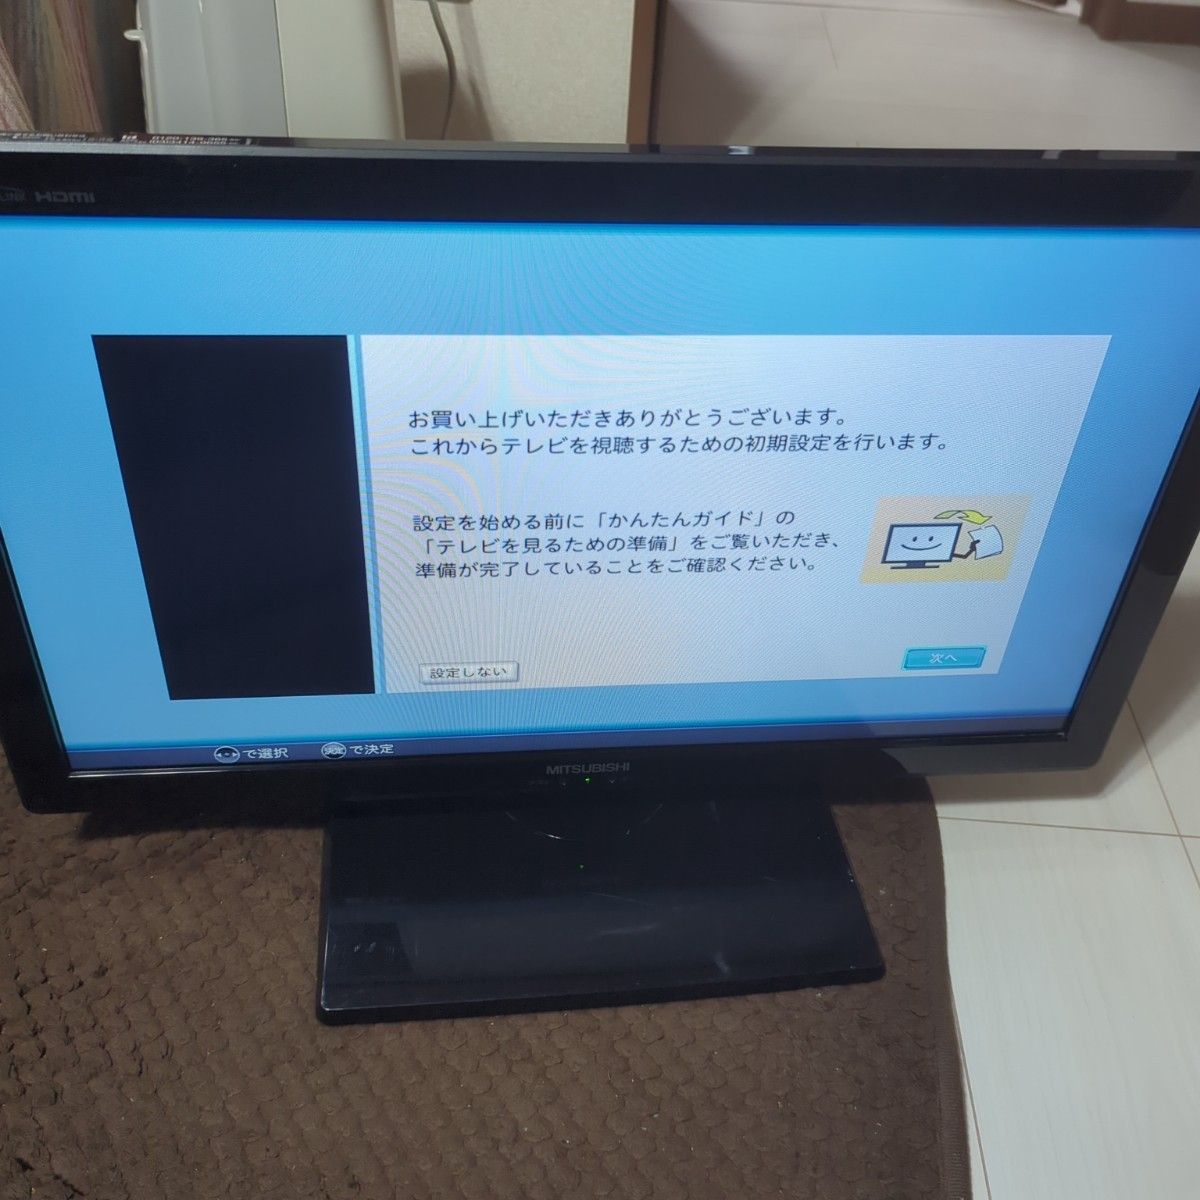 三菱　24インチ　テレビ　リモコン　モニター　LCD-24LB4 ほぼ未使用　壁掛け　美品　 MITSUBISHI REAL